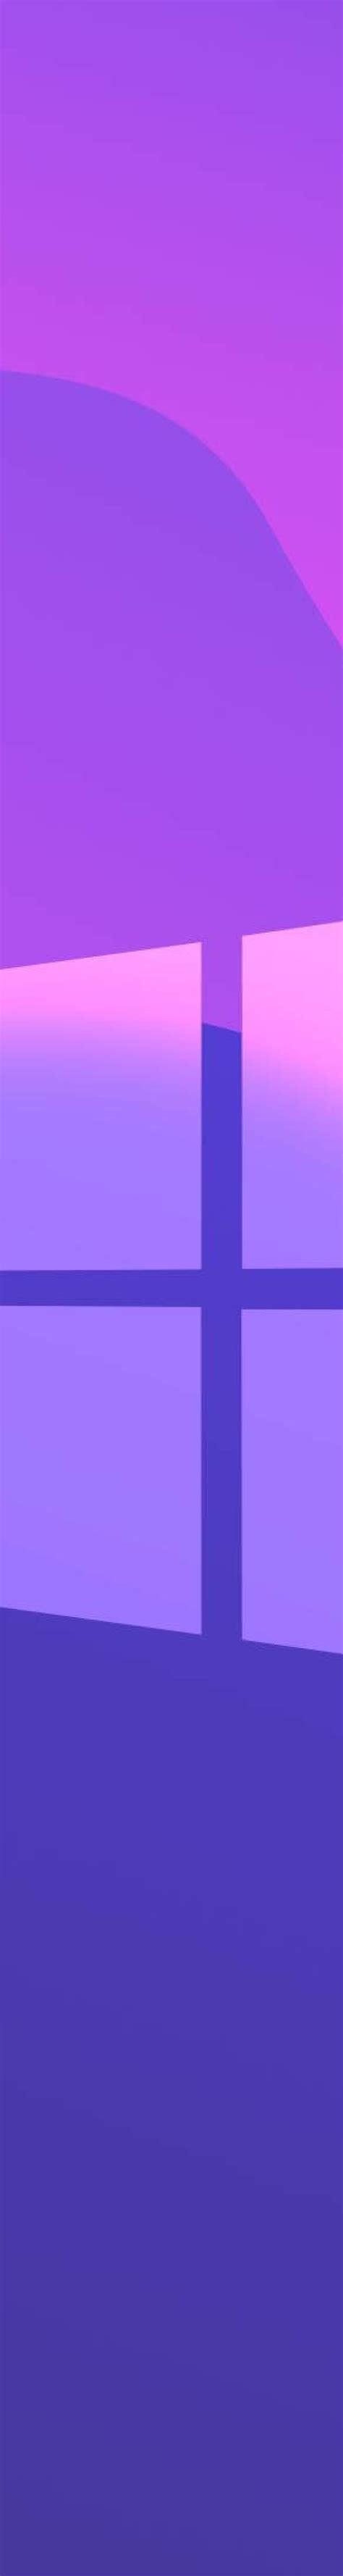 800x6002 Windows 10 Purple Gradient 800x6002 Resolution Wallpaper Hd